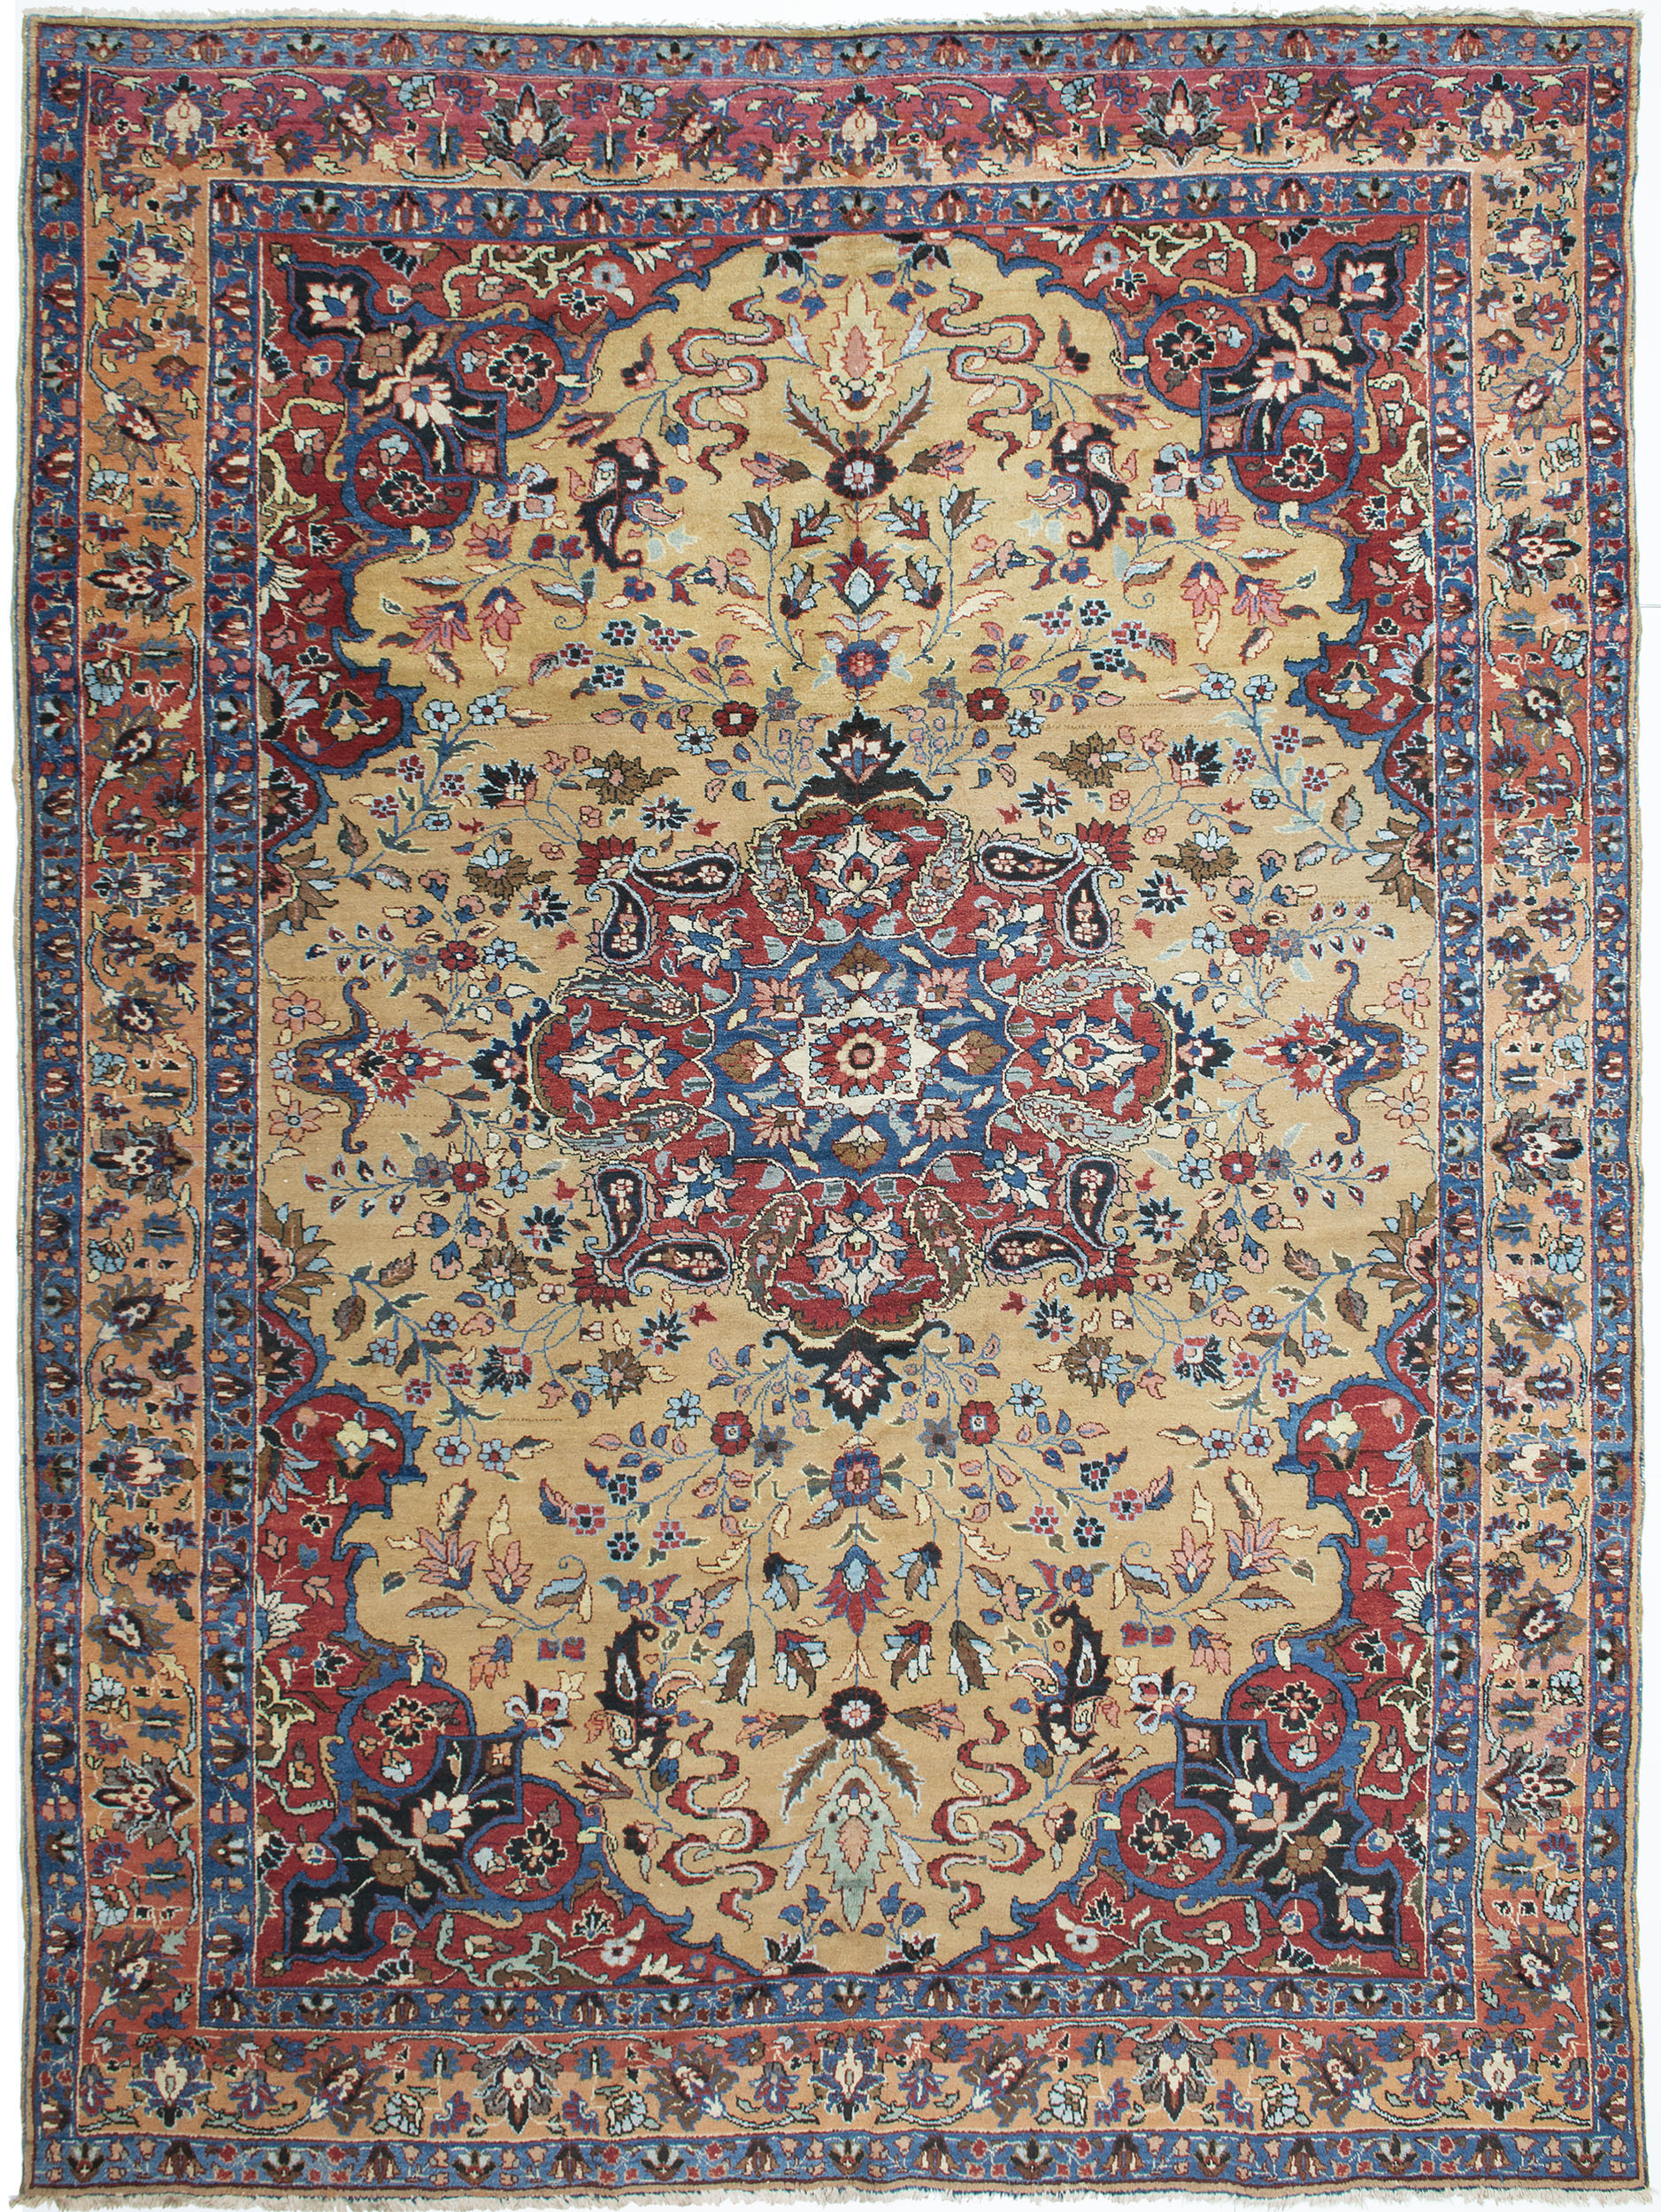 Tabriz Carpet 12' 5" x 9' 1" 